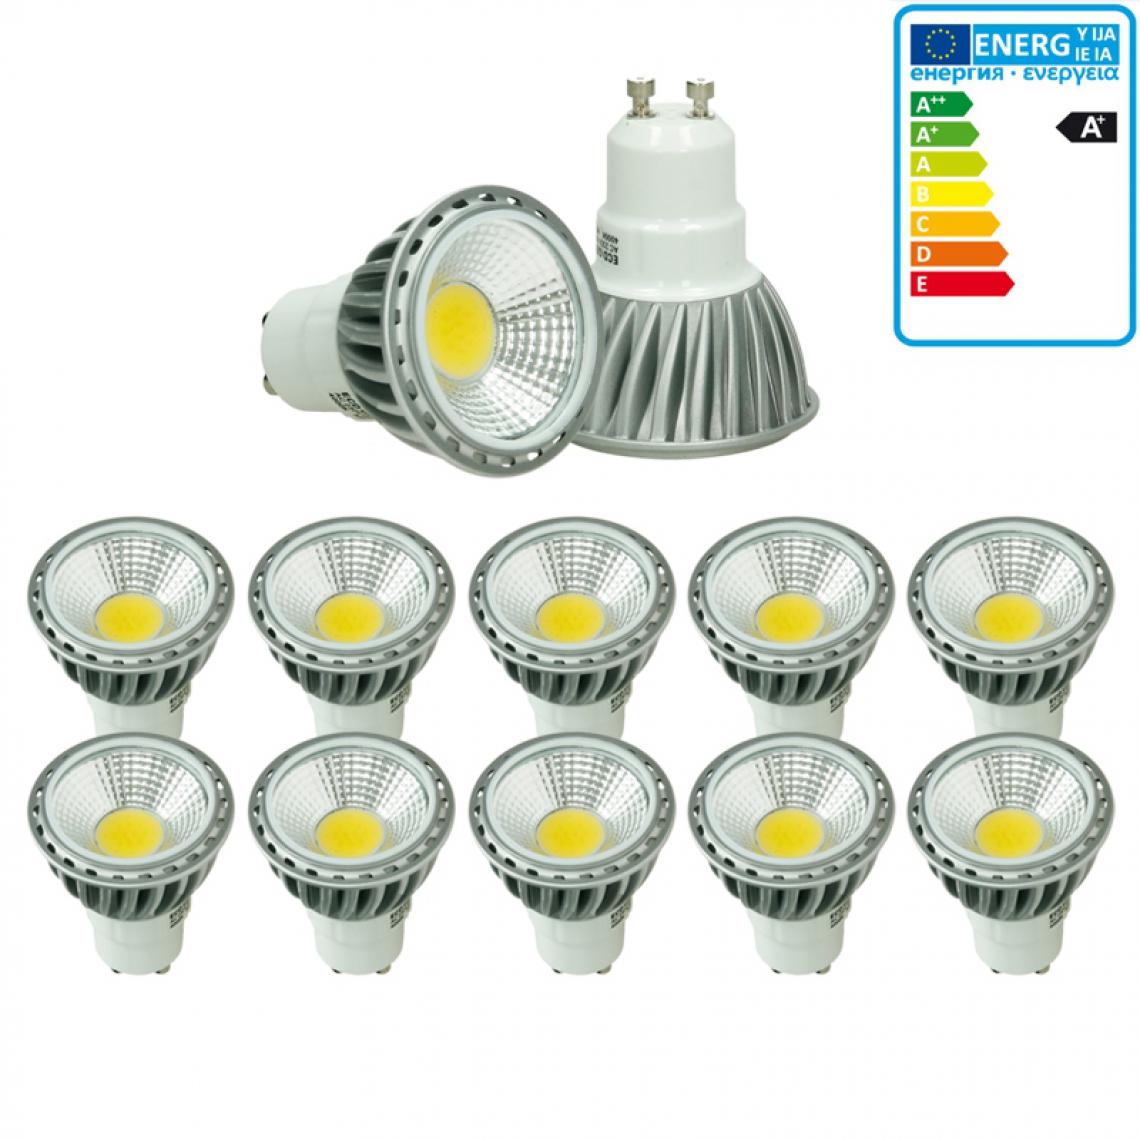 Ecd Germany - ECD Germany 10 x GU10 LED COB Spot 6W Lampe d'économie d'énergie d'environ 321 lumens remplace Lampe halogène 40W 2800K Blanc Chaud - Ampoules LED